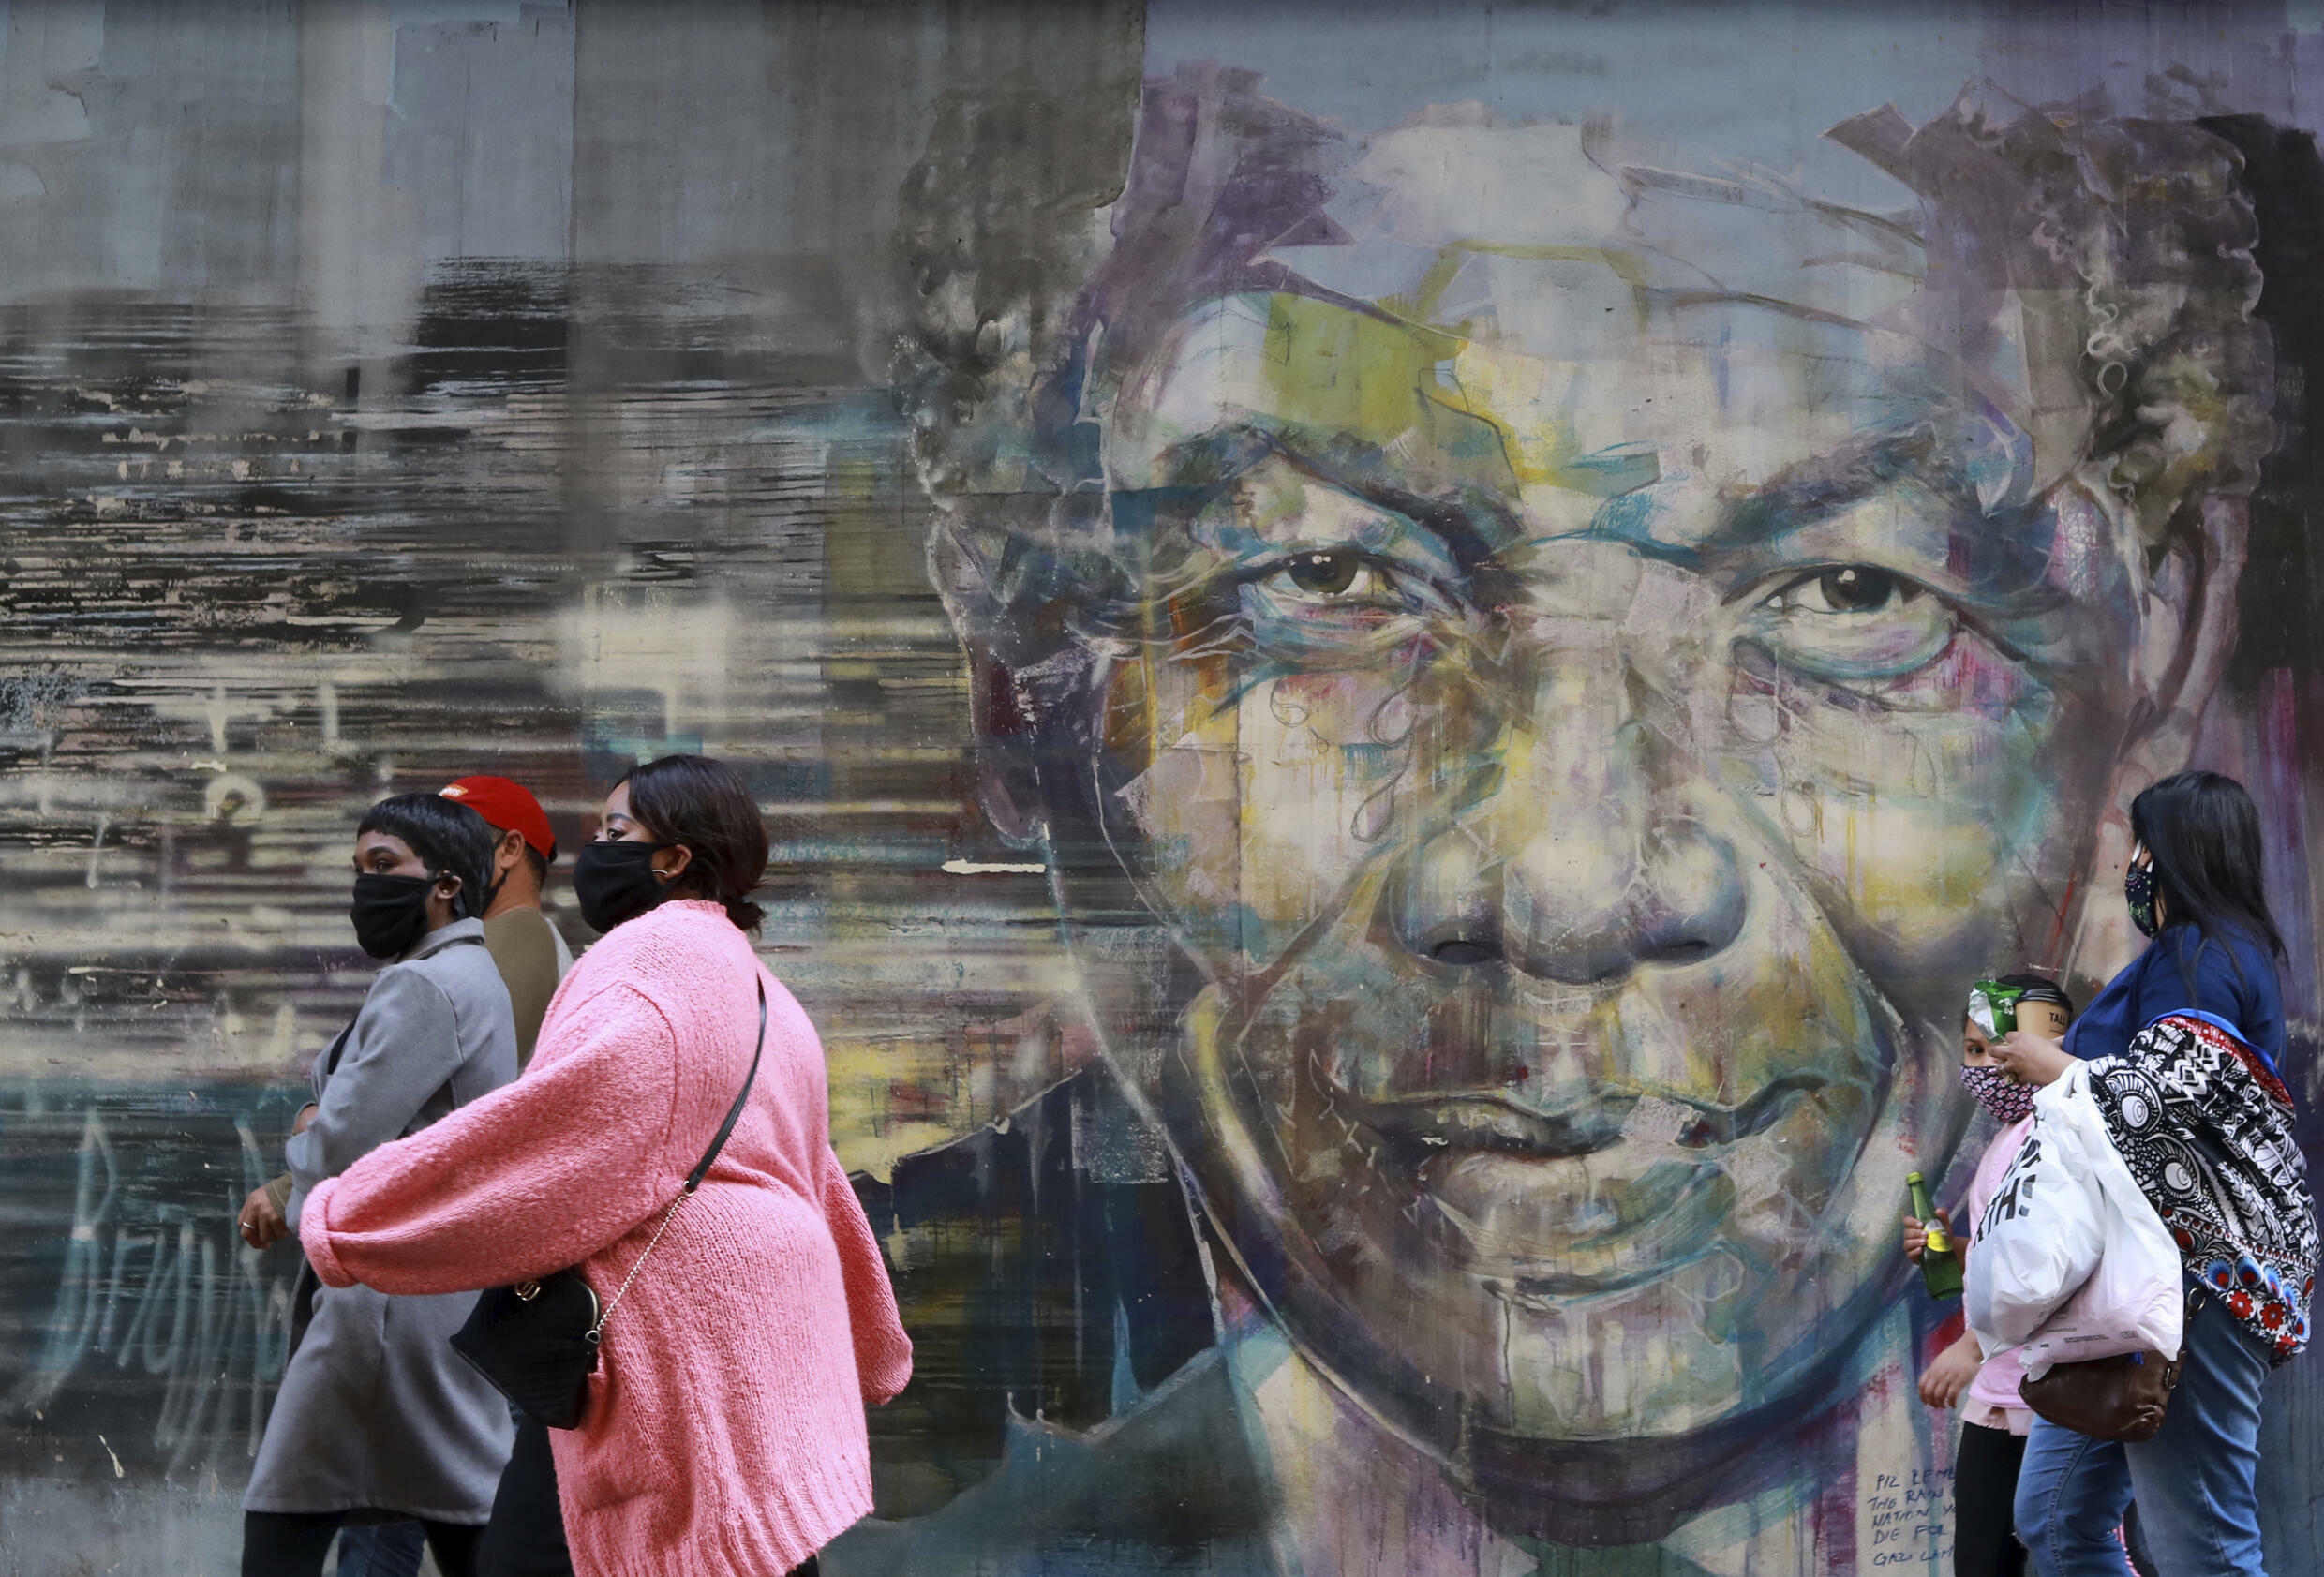 Max du Preez, journaliste: «Mandela a éloigné la menace de la plus sanglante des guerres civiles d’Afrique»